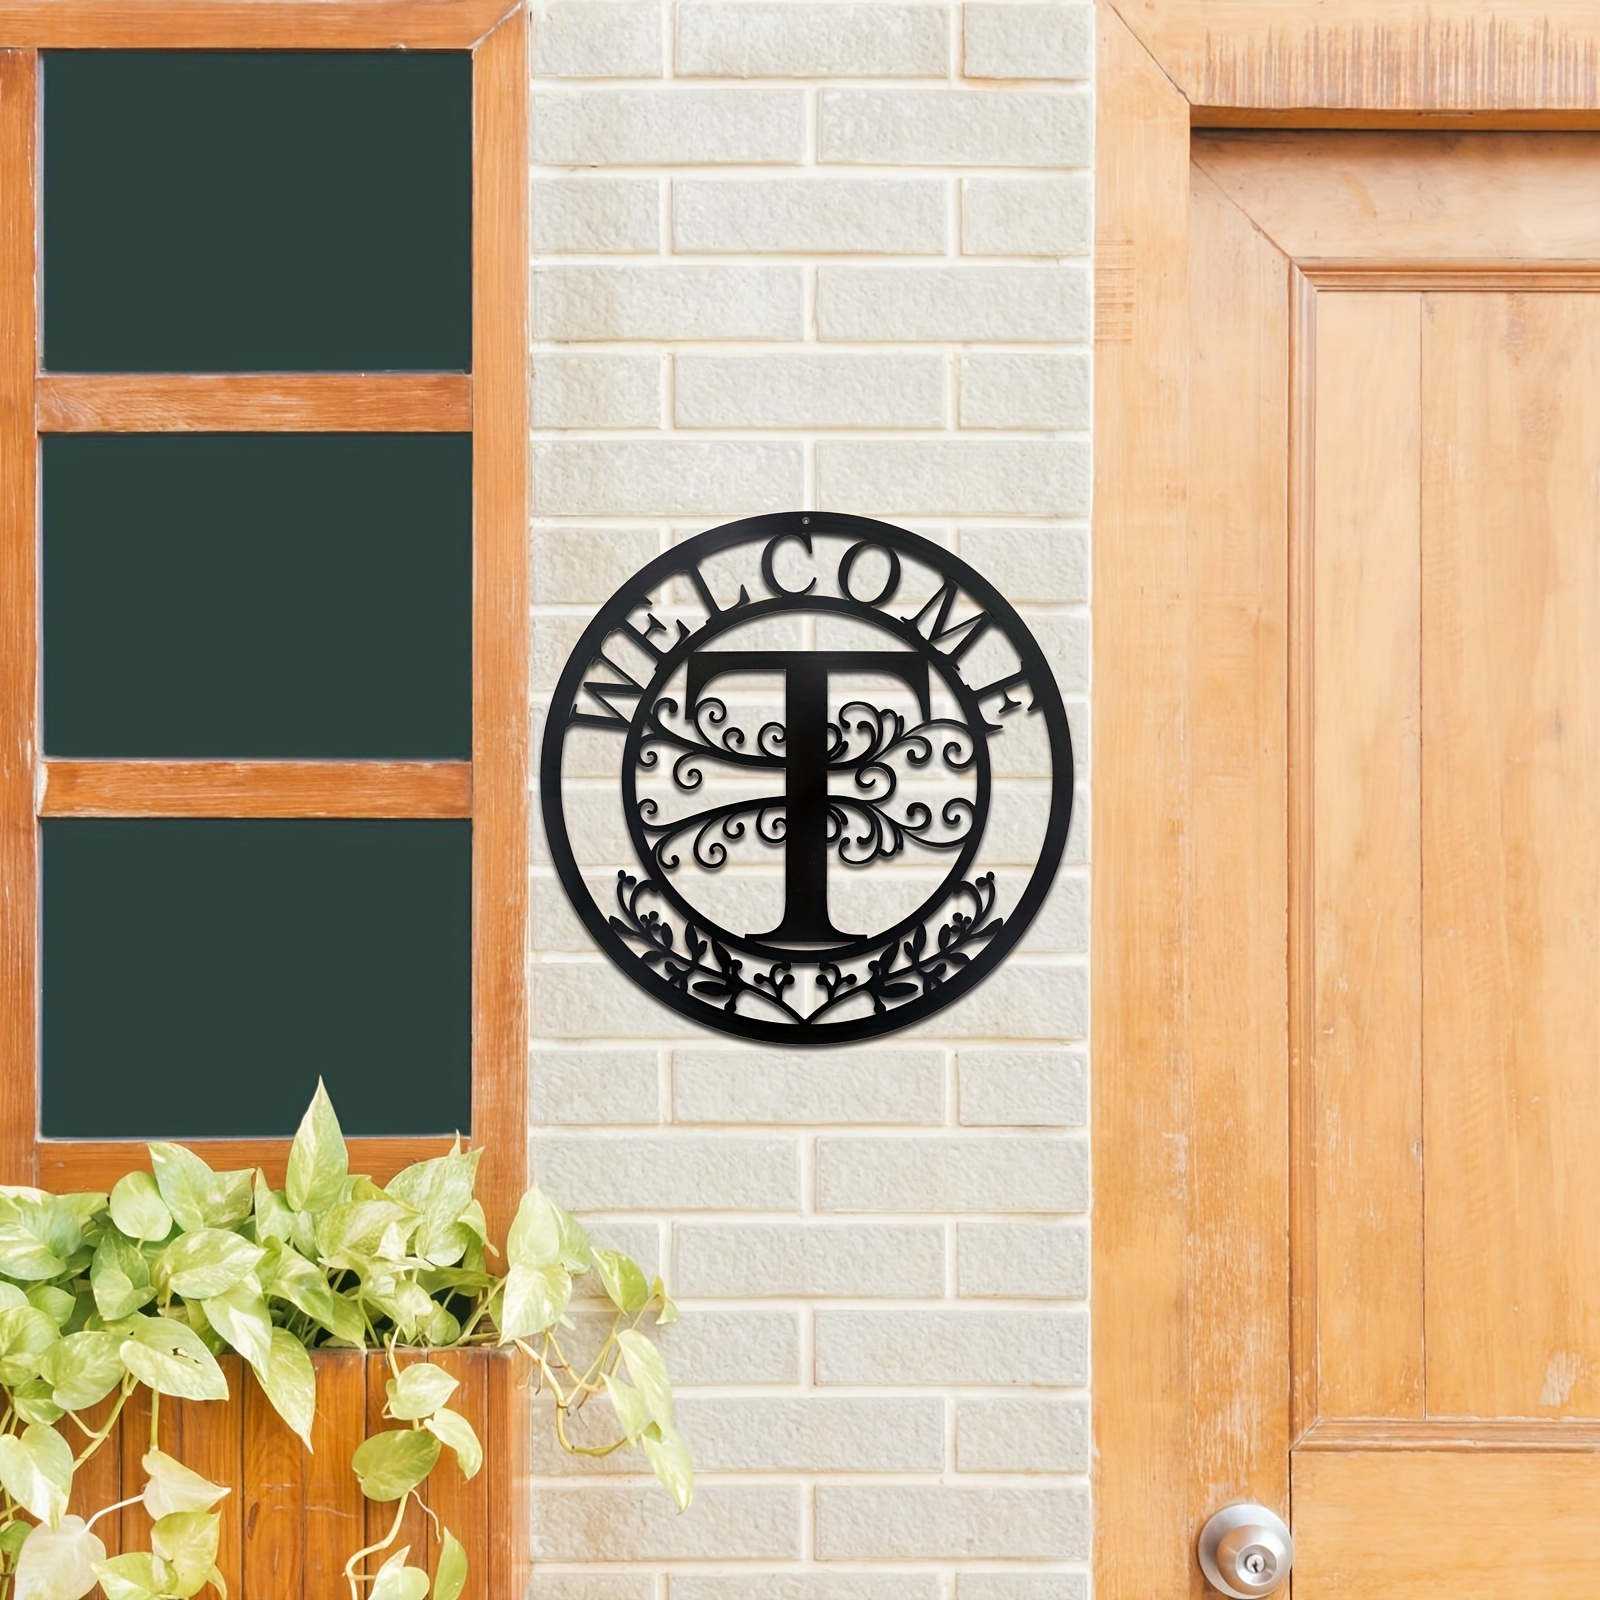 Custom Door Sign - Engraved Door Plaque or Room Name Sign